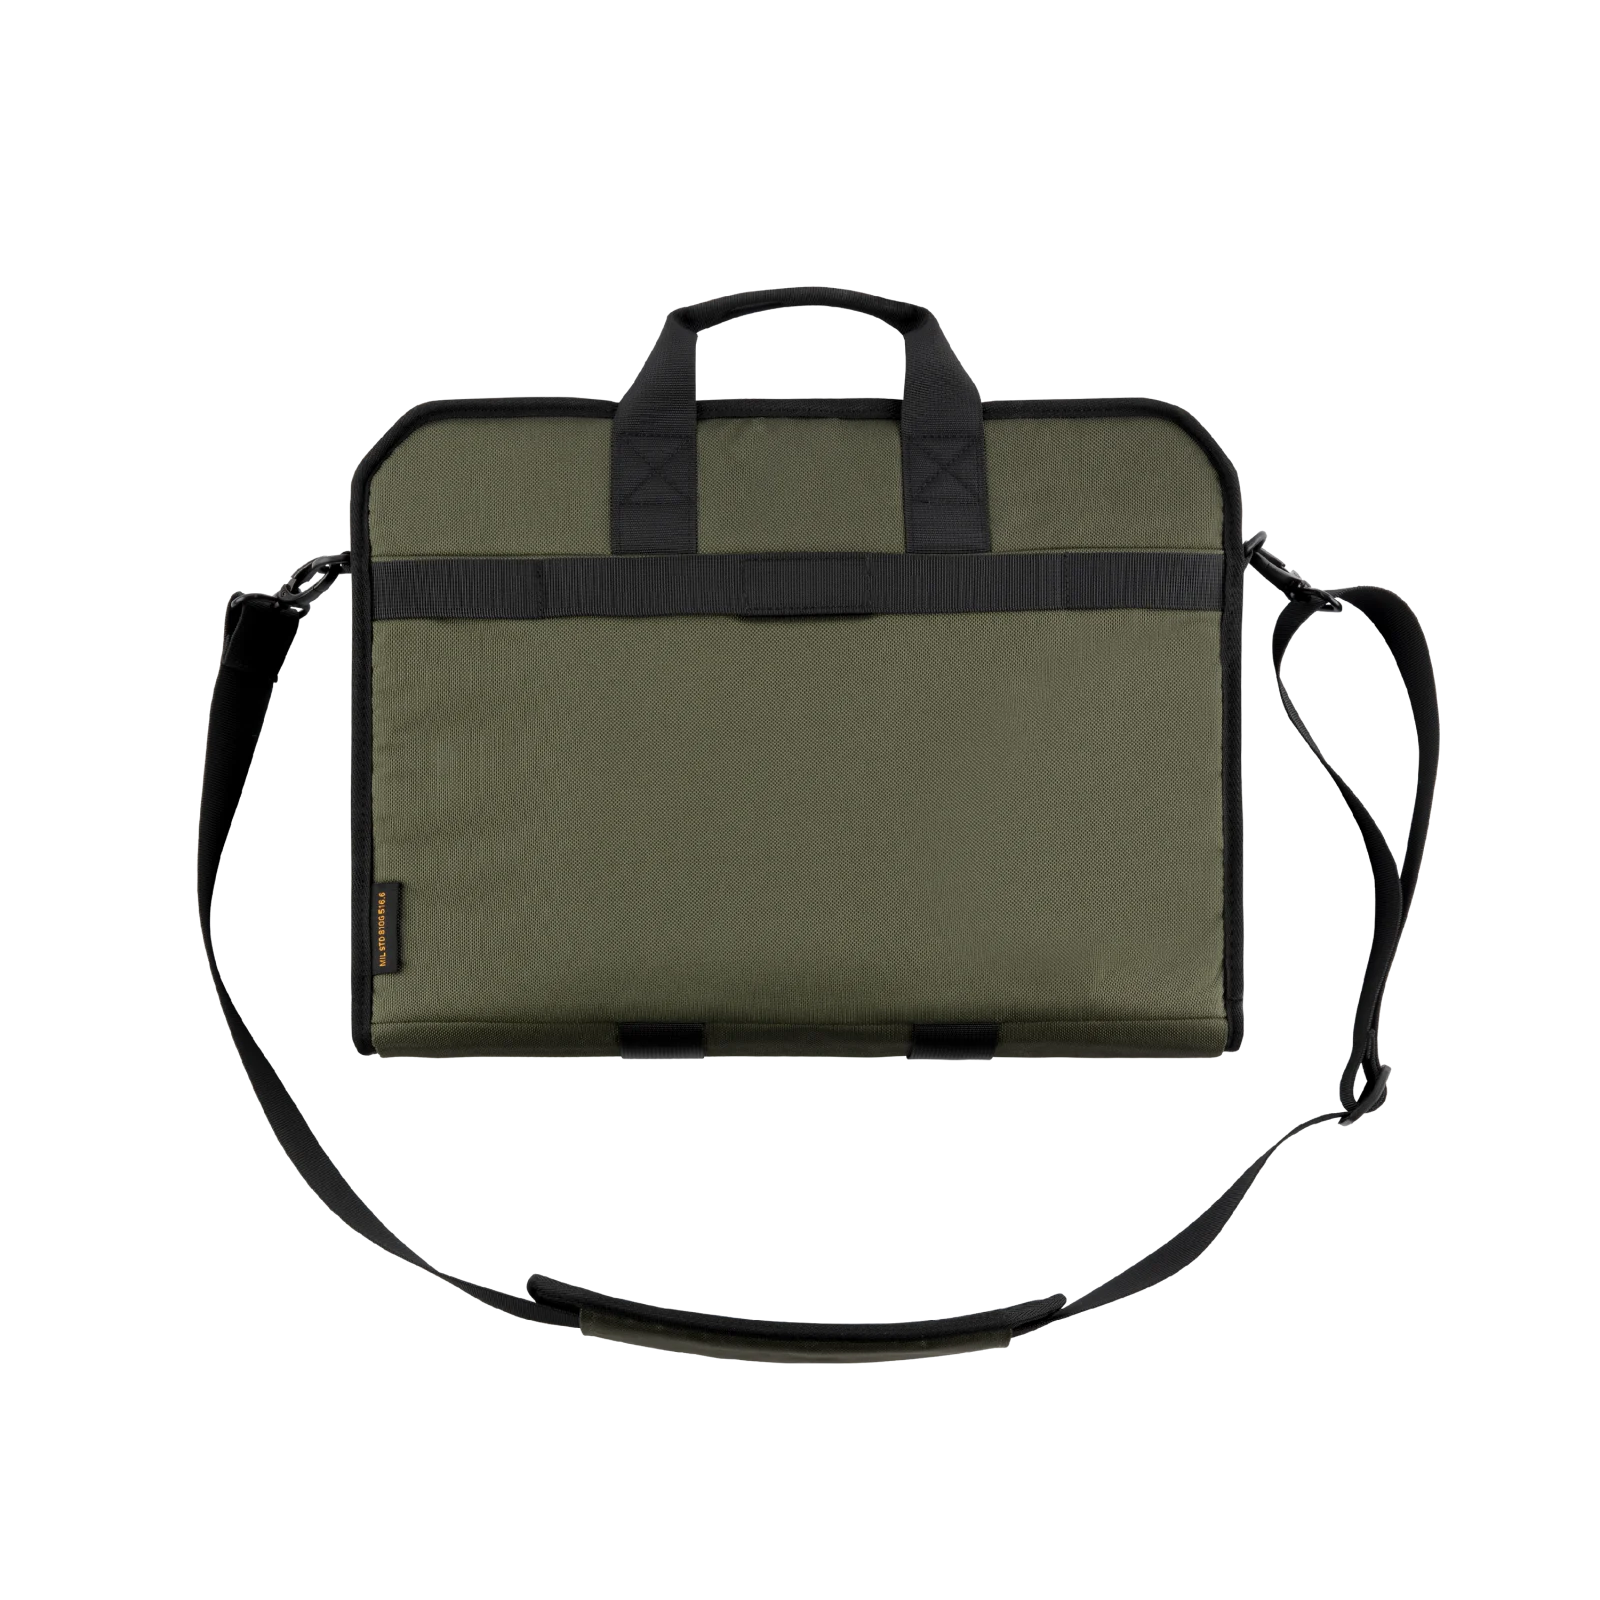 กระเป๋าโน๊ตบุ๊ค UAG รุ่น Tactical Slim Brief - Tablet/Laptop 13" - สีดำ - Olive